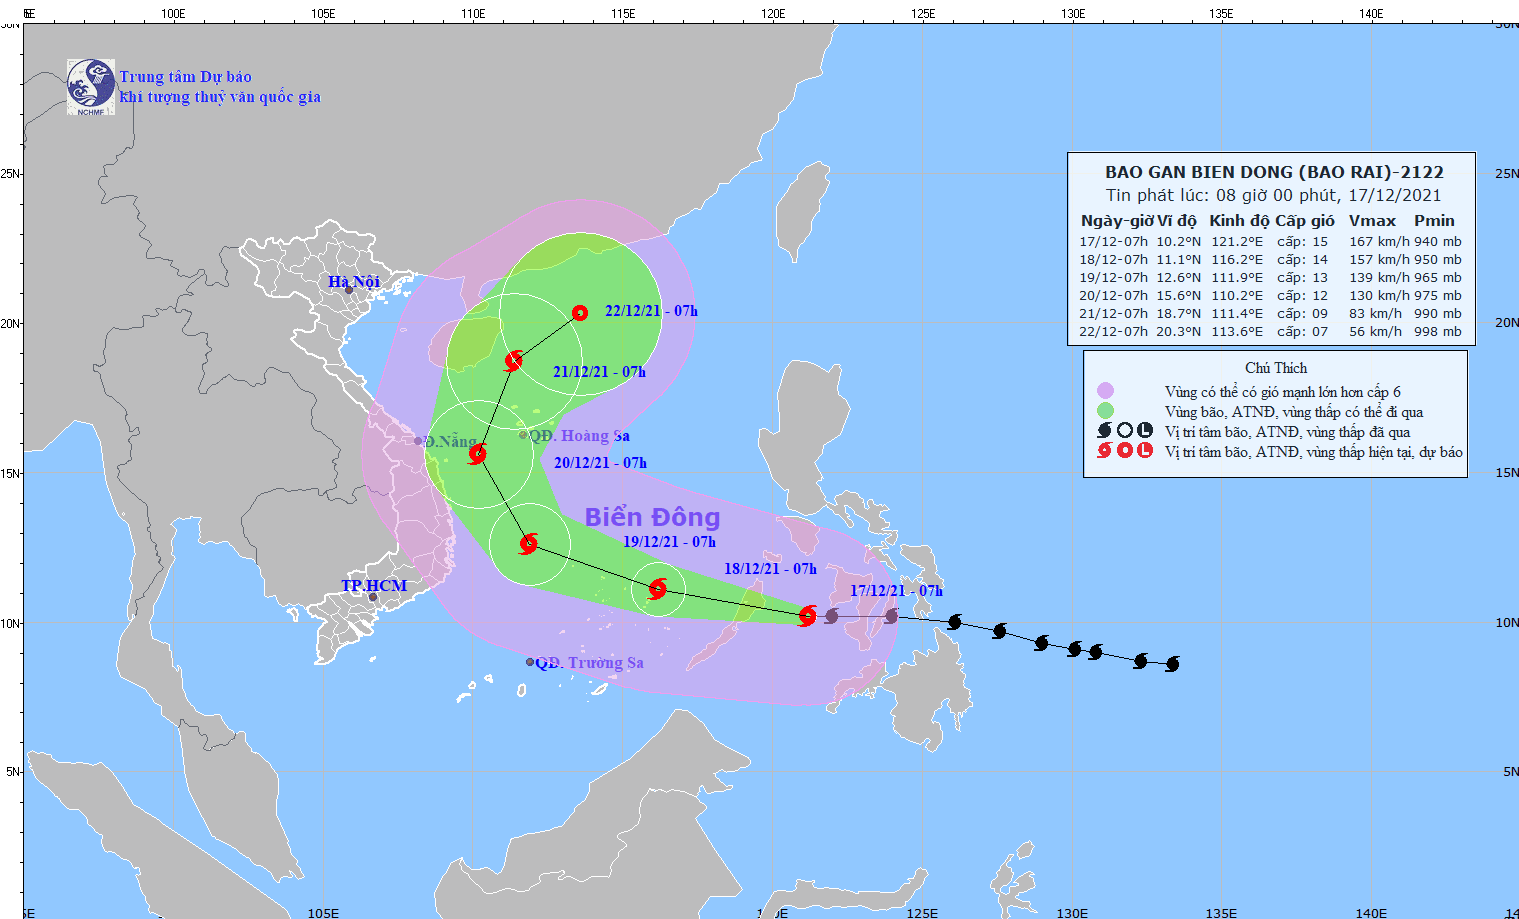 Siêu bão RAI mạnh cấp 15 chiều tối nay (17/12) đi vào Biển Đông